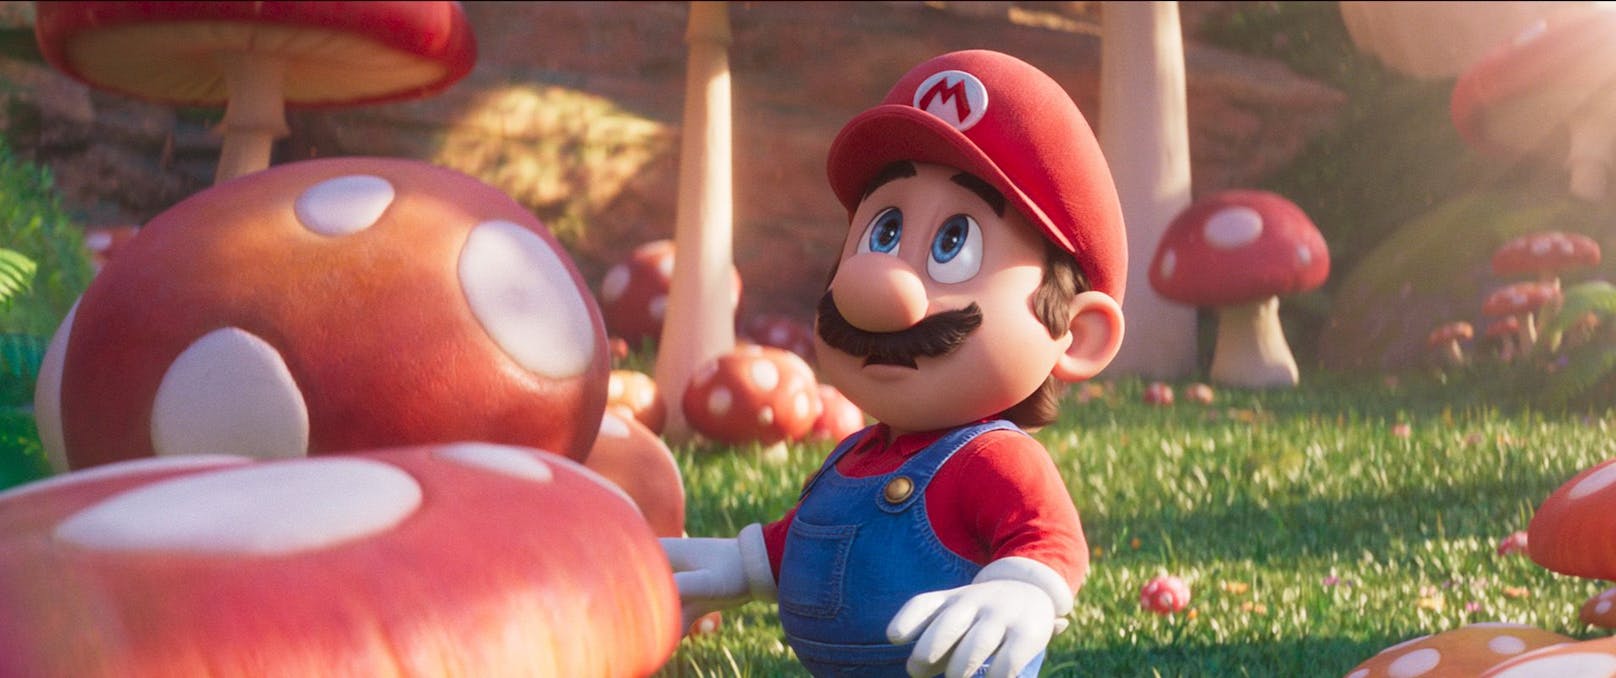 Mario landet hingegen im Pilzkönigreich,...